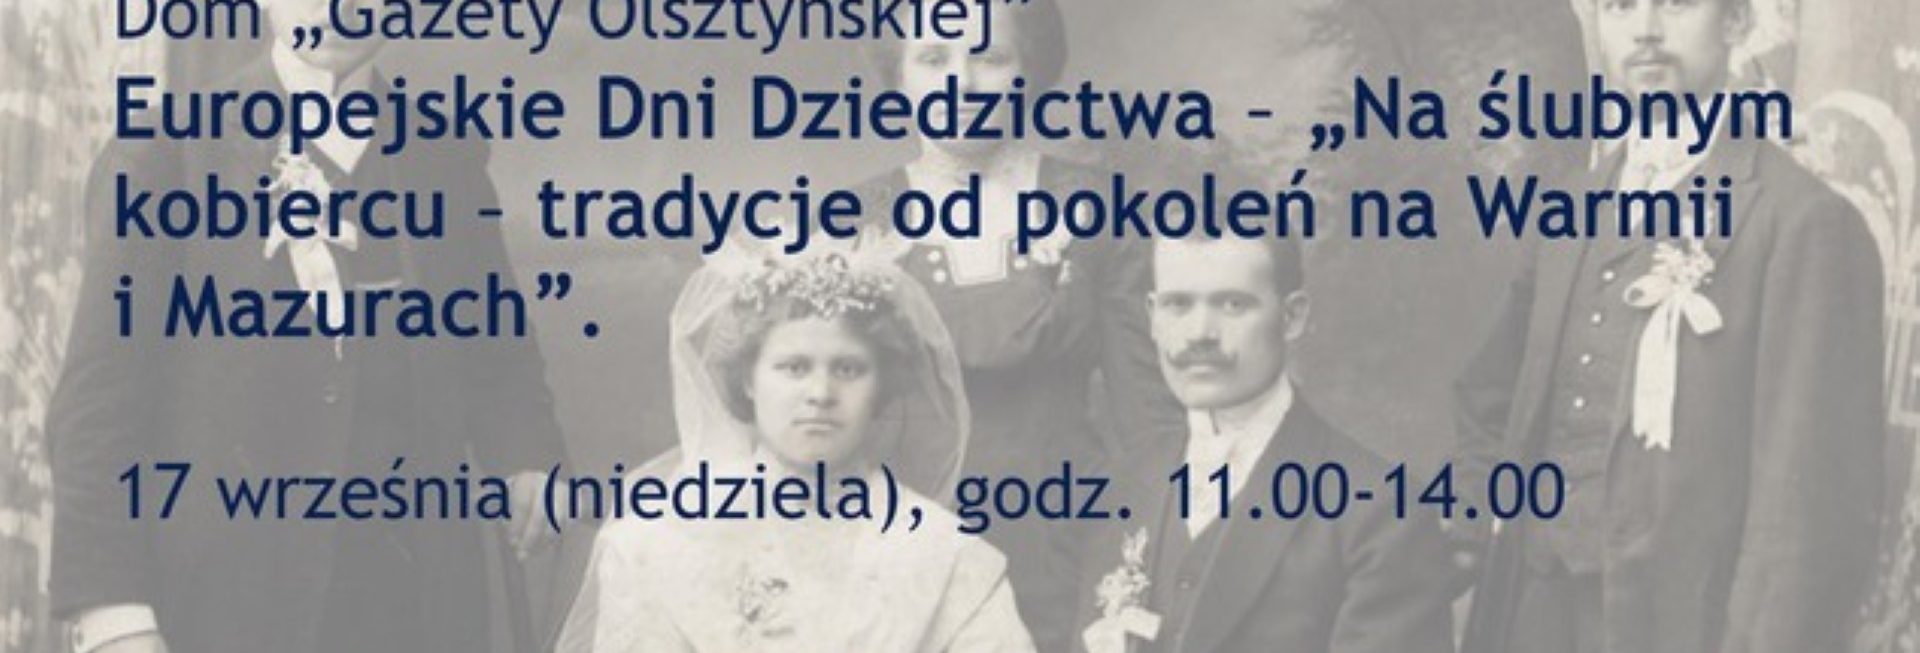 Plakat zapraszający w niedzielę 17 września 2023 r. do Olsztyna na Europejskie Dni Dziedzictwa "Na ślubnym kobiercu - tradycje od pokoleń na Warmii i Mazurach" Dom Gazety Olsztyńskiej 2023.